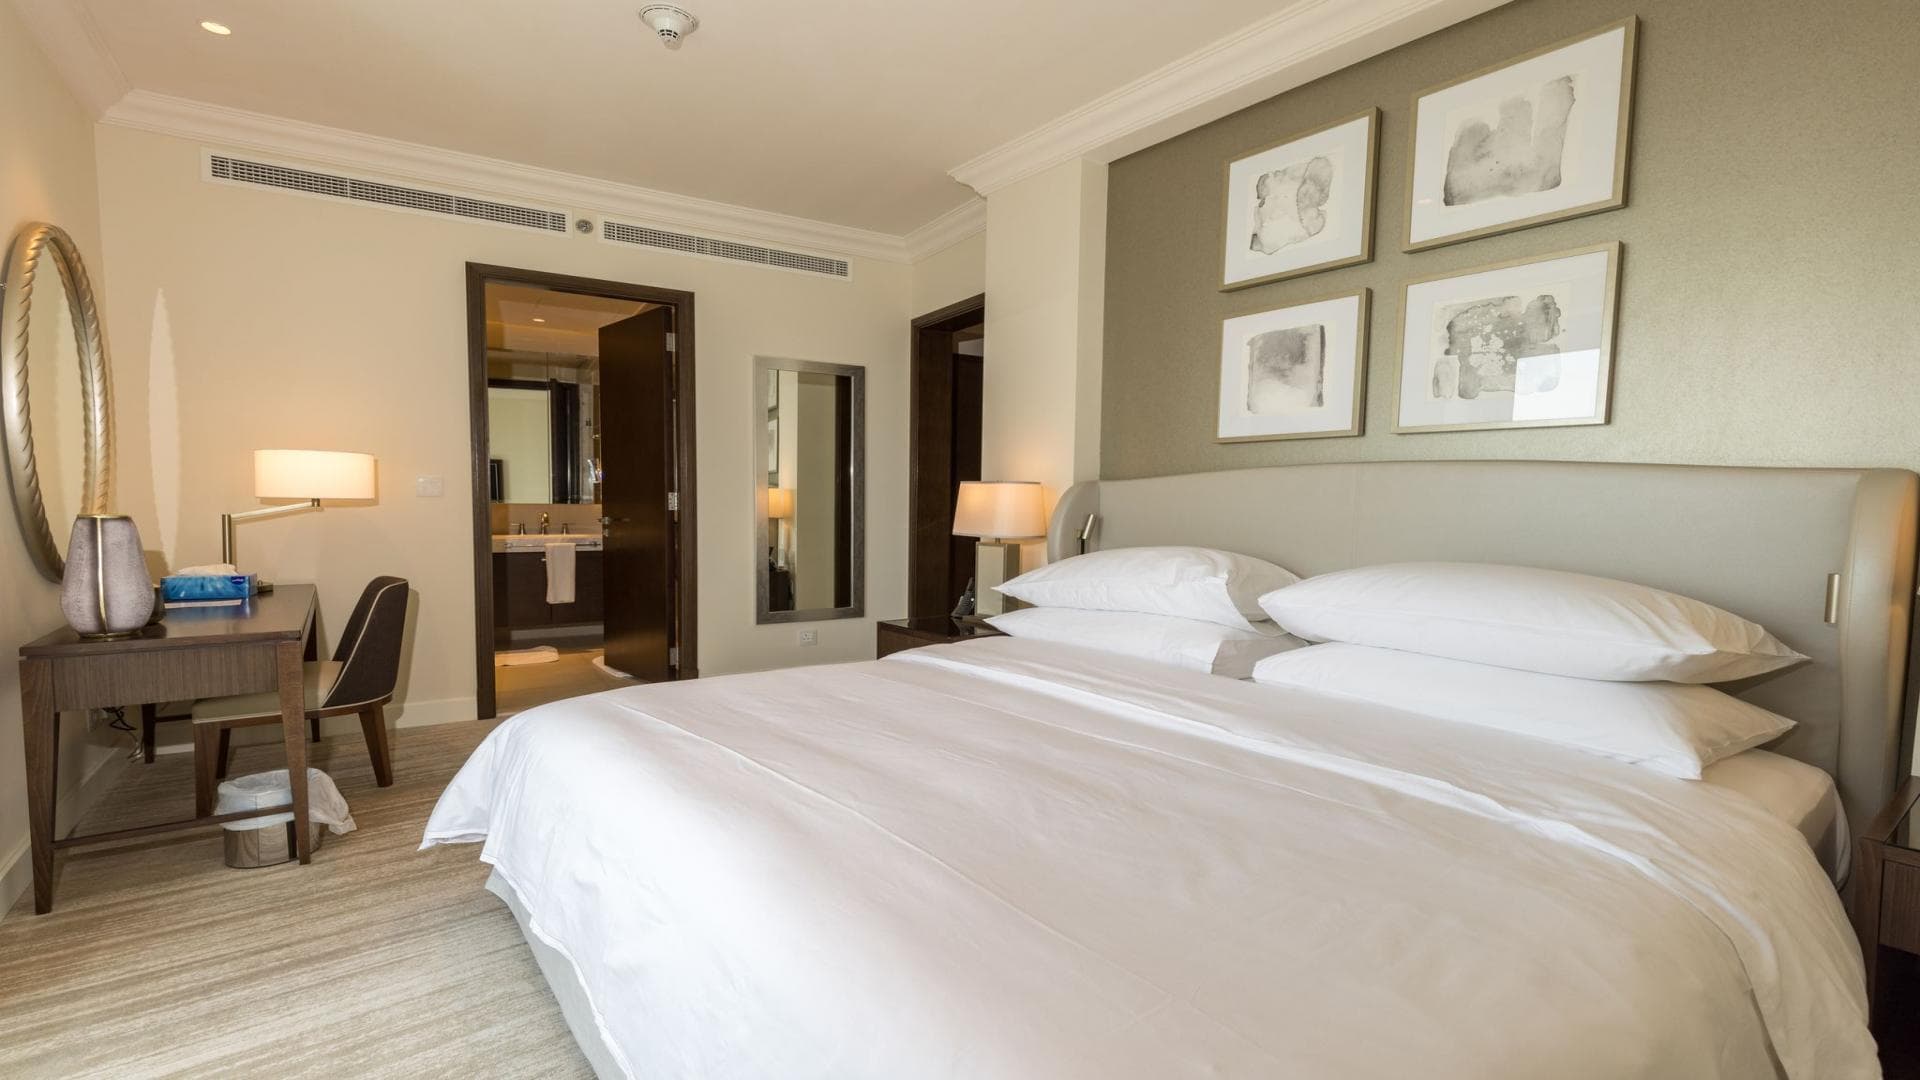 2 Bedroom Apartment For Rent Al Thamam 09 Lp36349 1736a3dc9b8cf300.jpeg